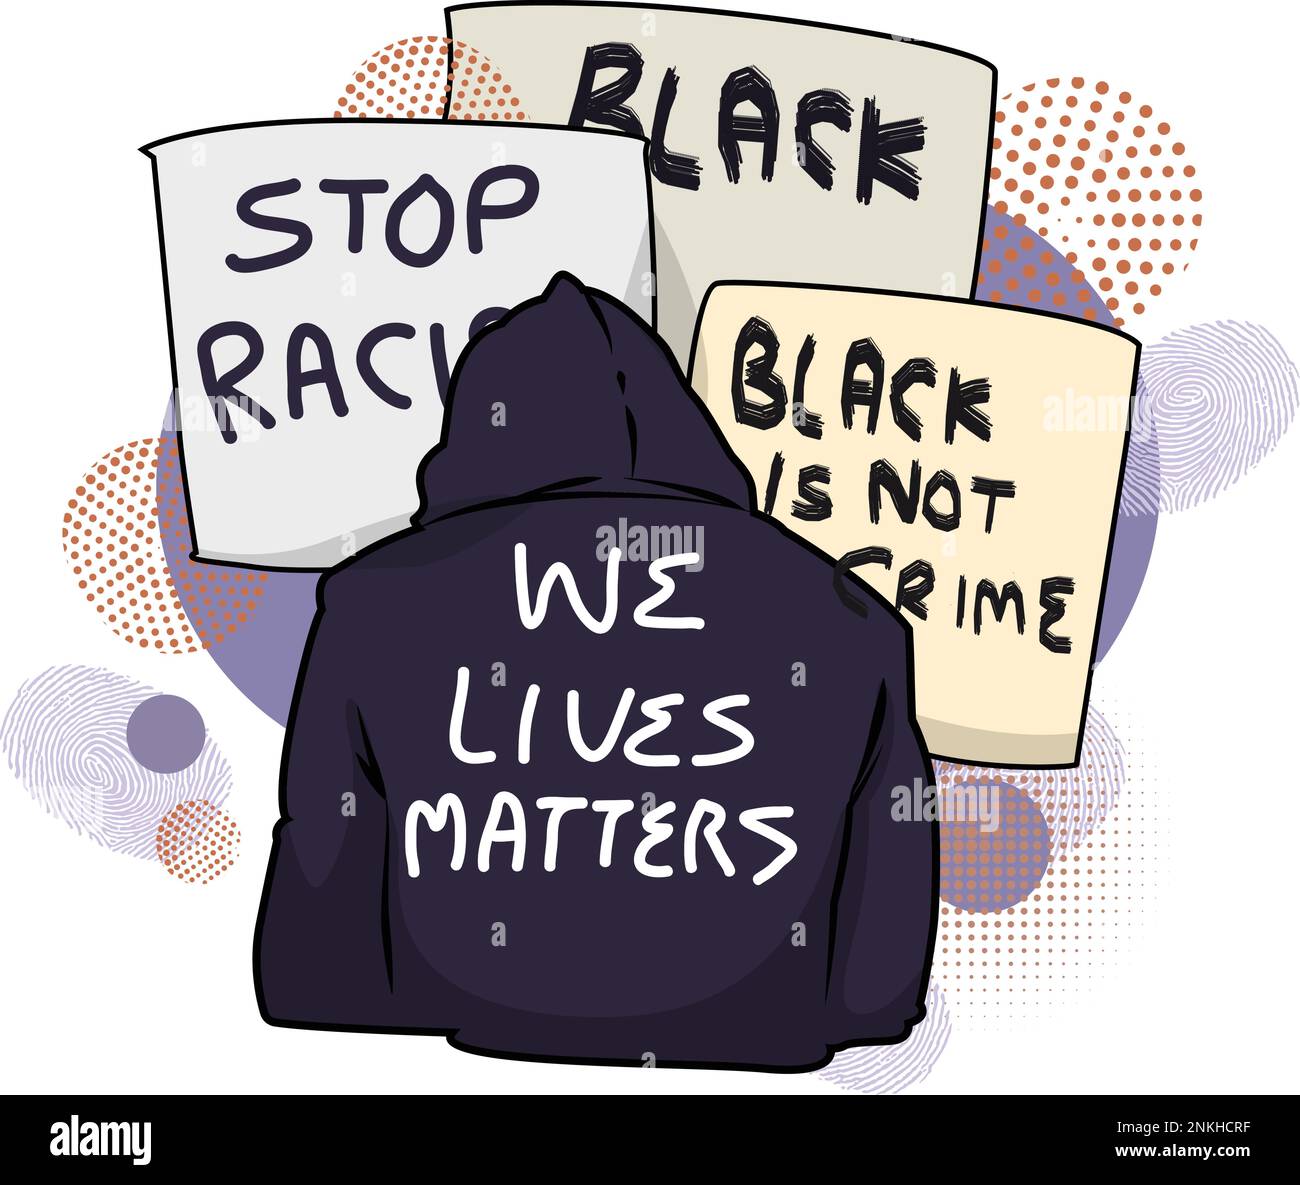 Black Lives Matter, BLM, kein Rassismus, Statement. Junge Afroamerikaner: Mann und Frau gegen Rassismus. Schwarze Bürger kämpfen für Gleichheit. Stock Vektor